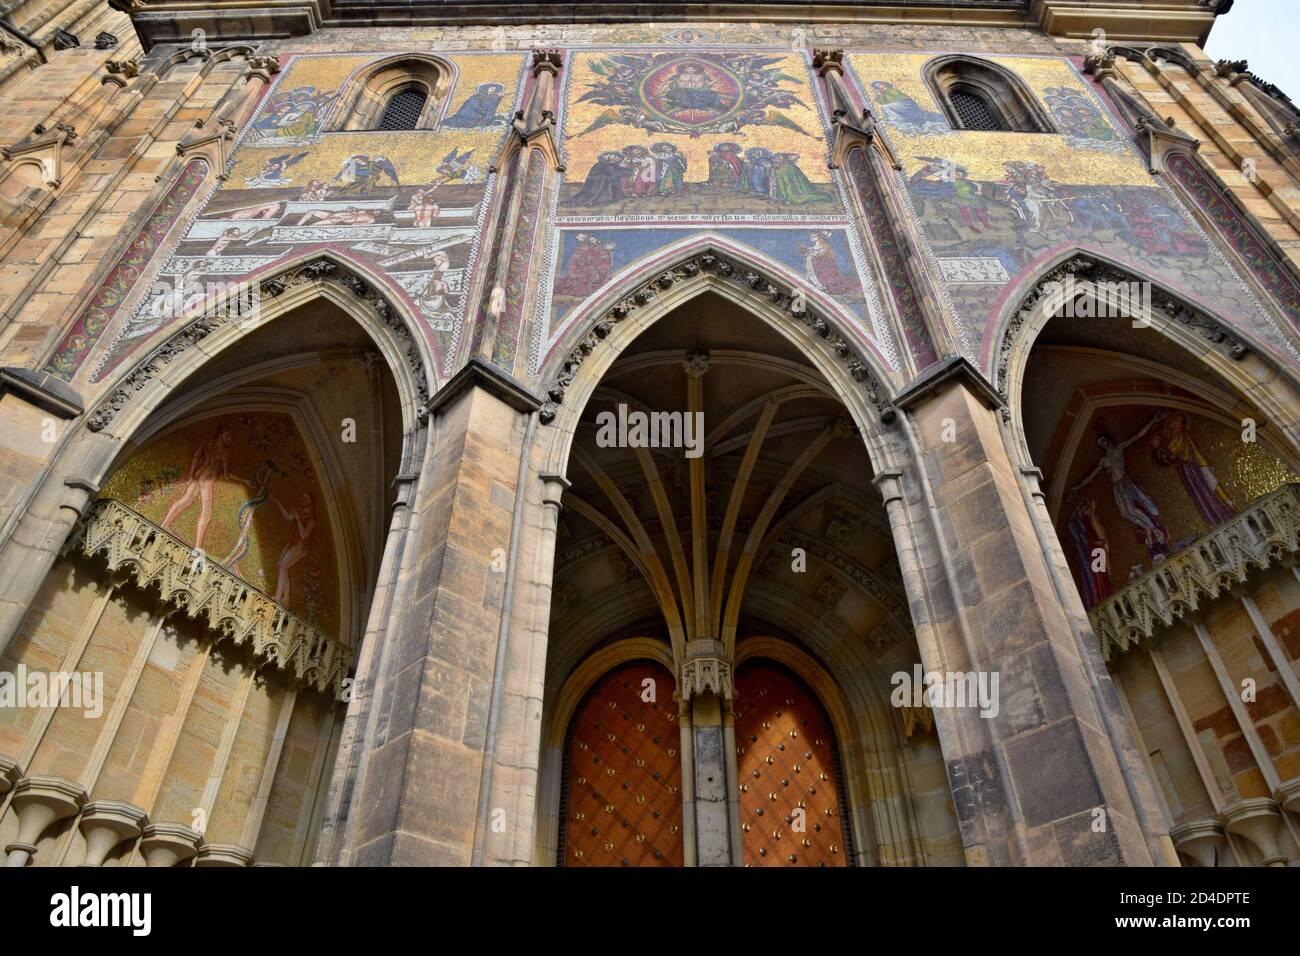 La Cattedrale Metropolitana di San Vito, situata all'interno del Castello di Praga, in Czechia, contiene le tombe di molti re boemi e imperatori sacri romani. Foto Stock